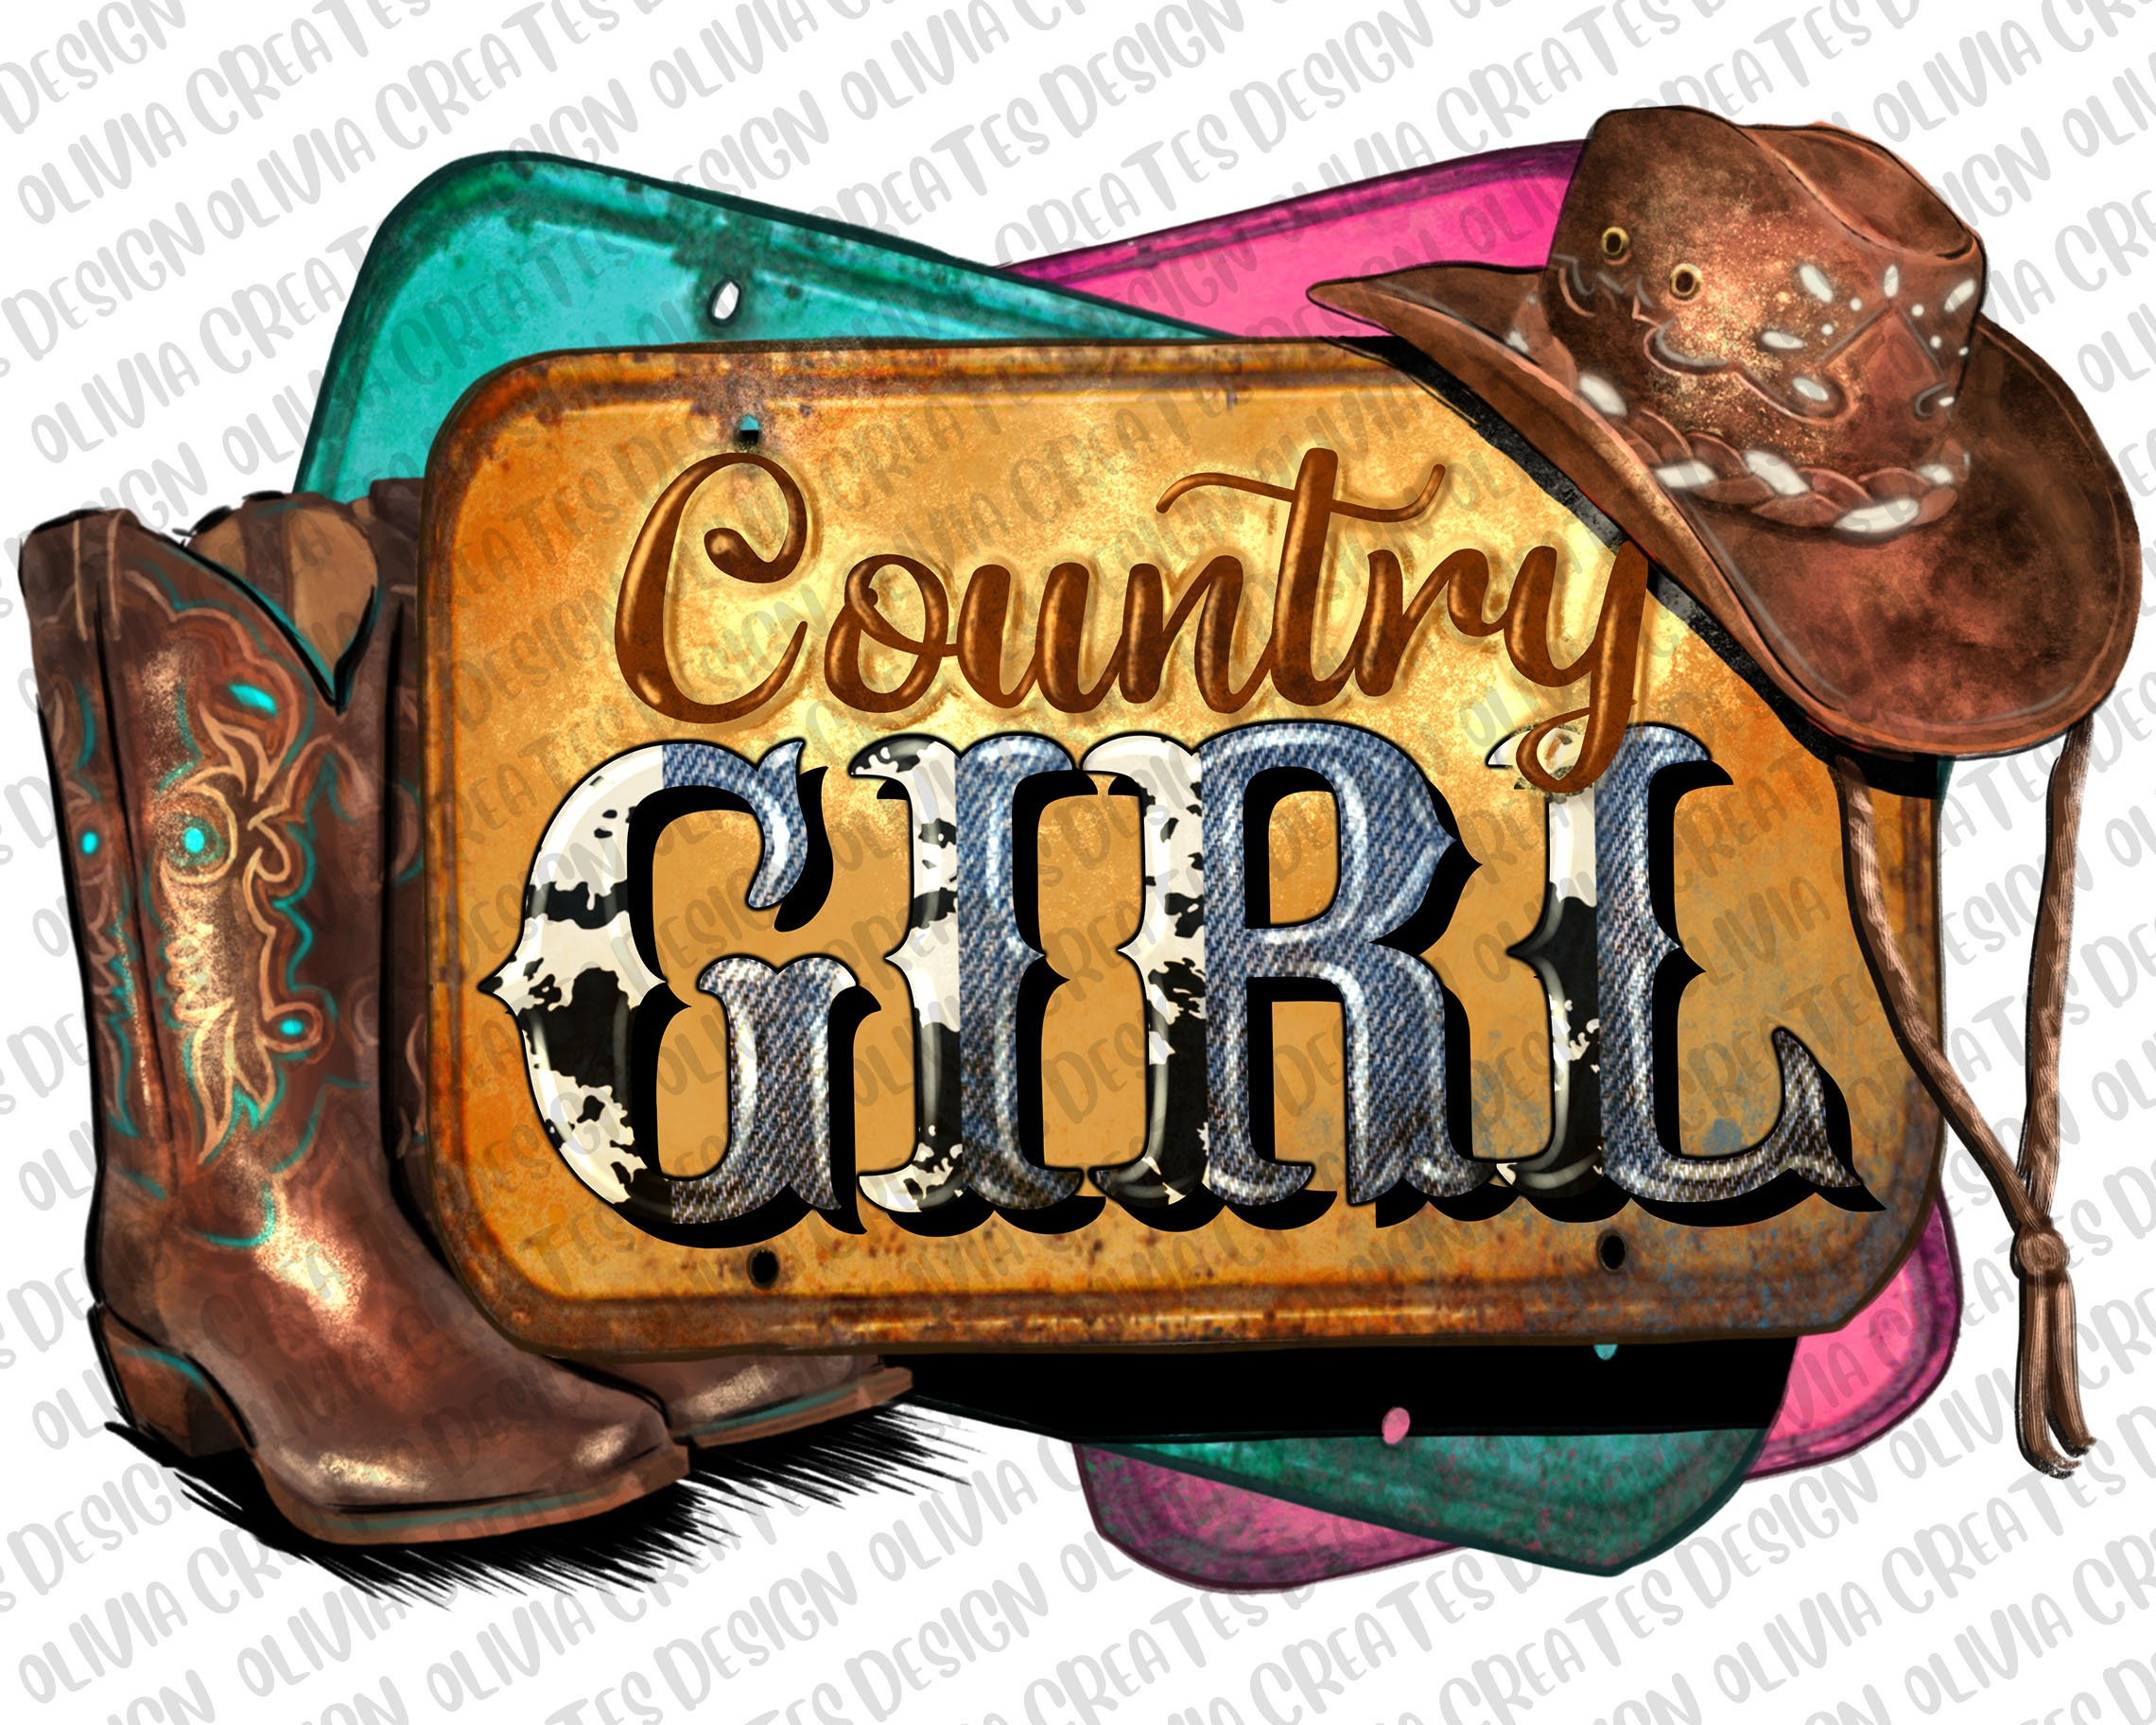 country girl facebook cover photos